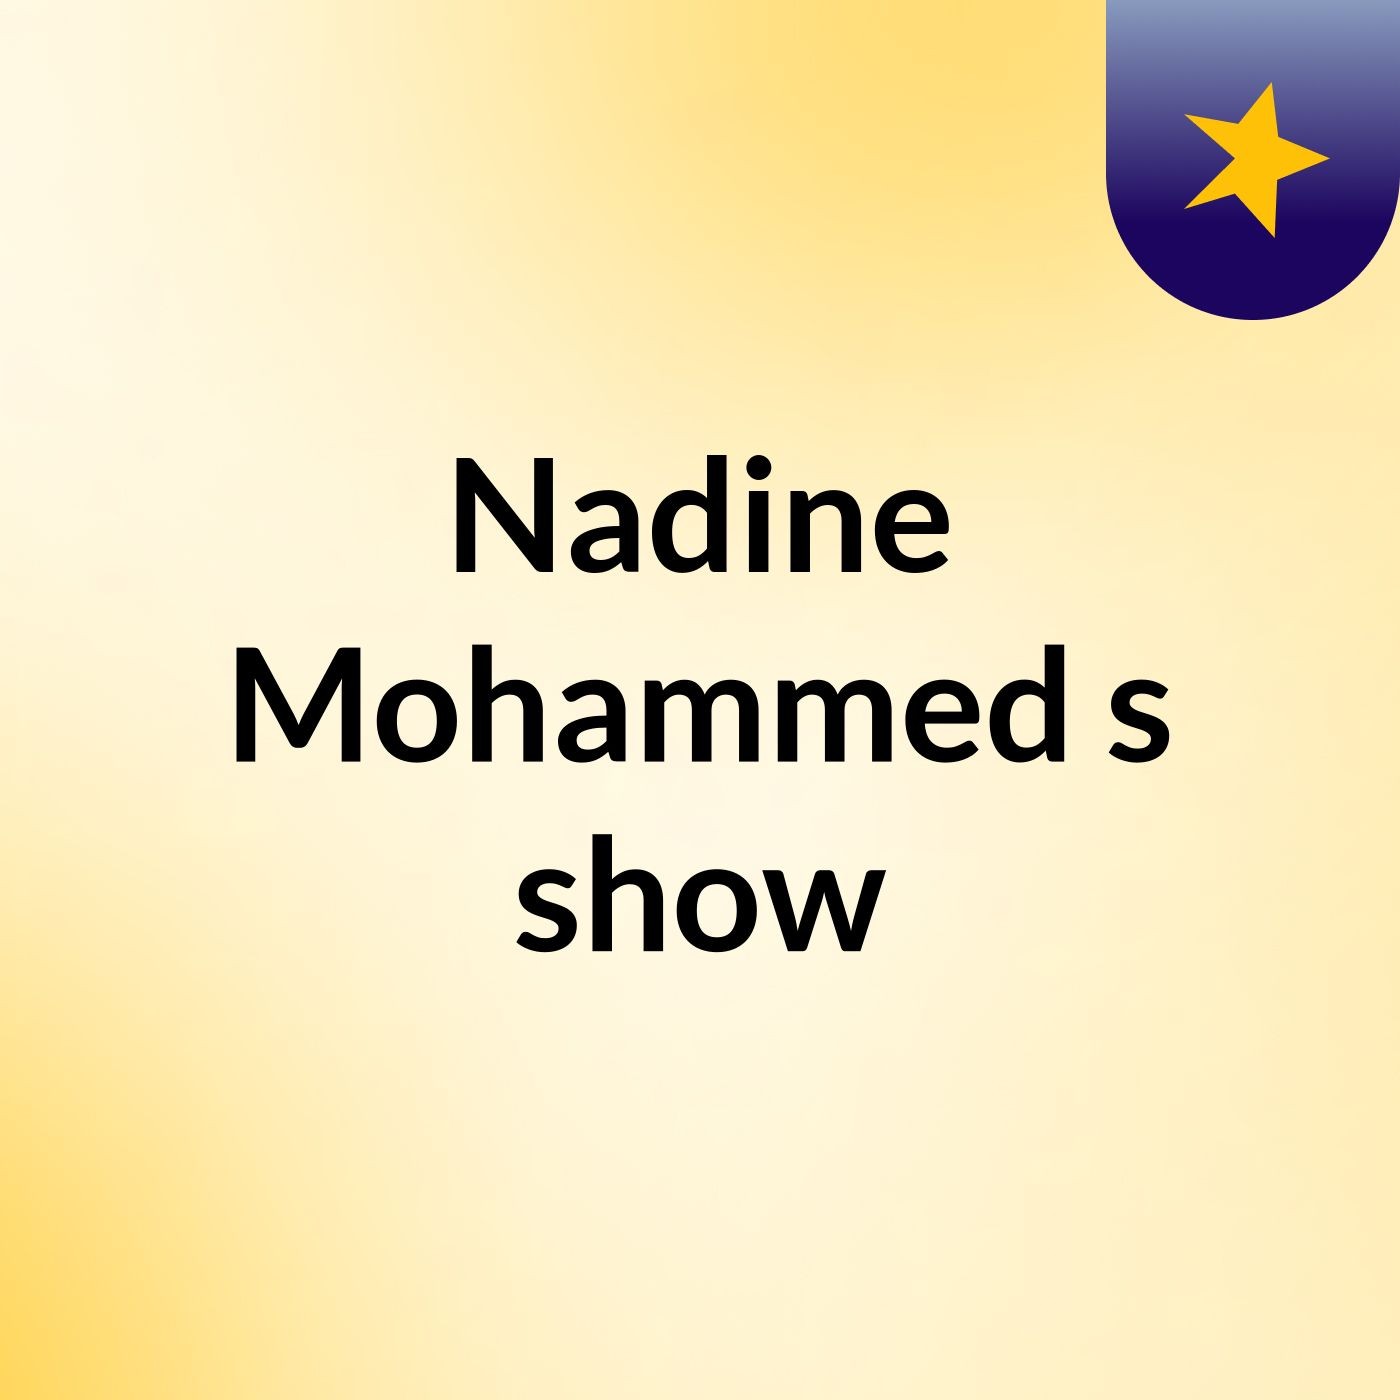 Nadine Mohammed's show